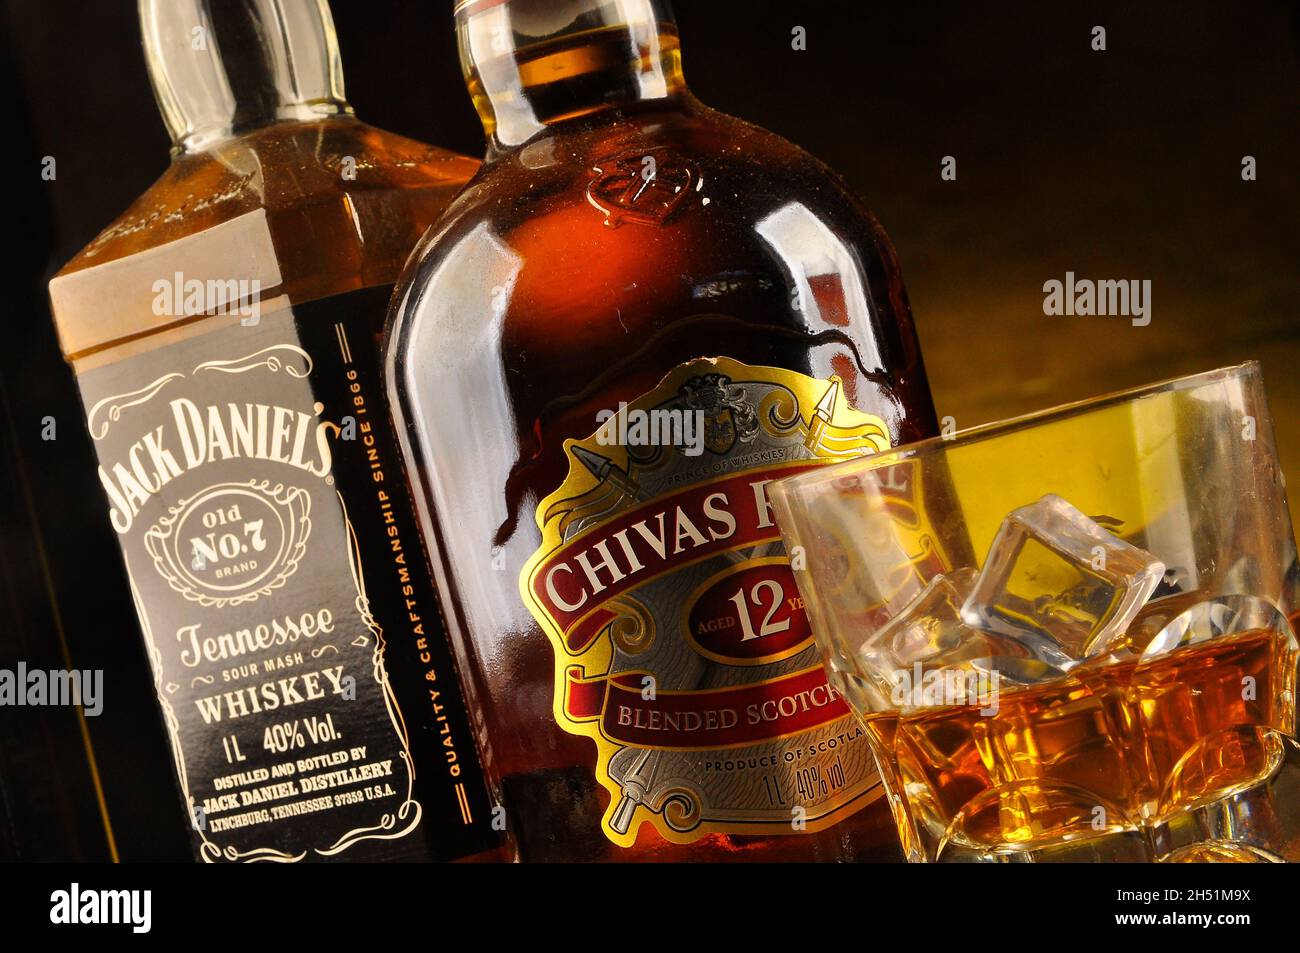 Vaso de whisky con la botella de Chivas Regal y Jack Daniel's cerca Foto de stock